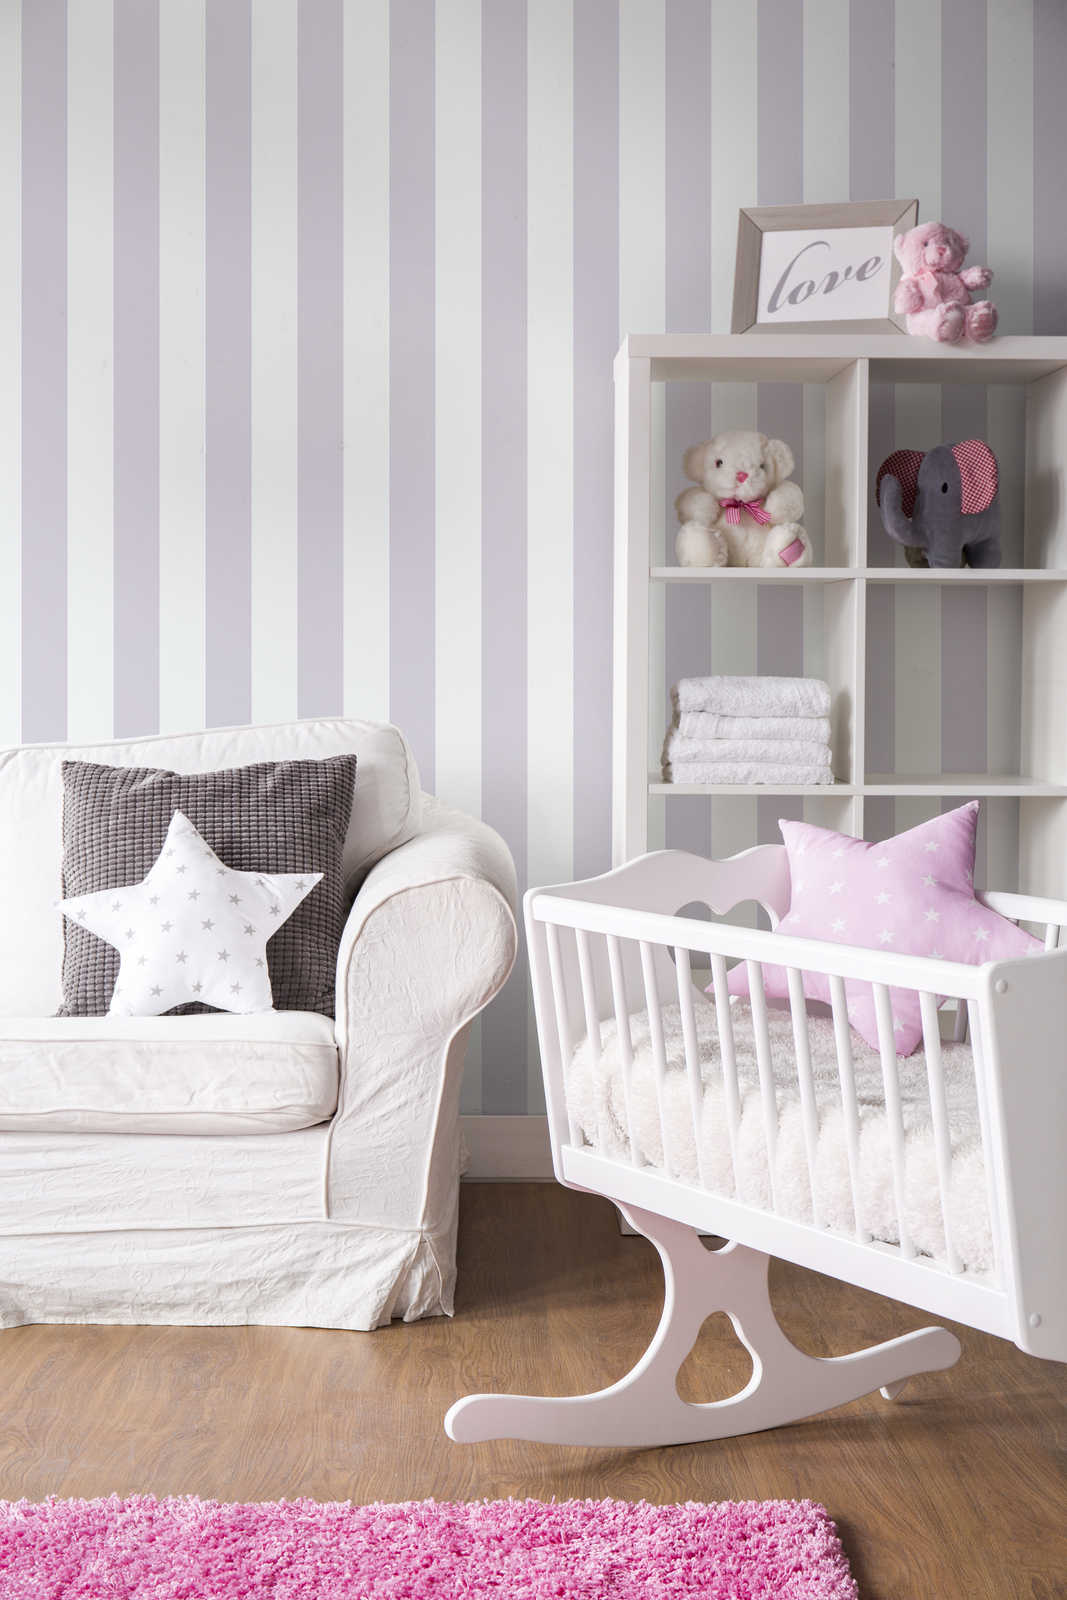             Kinderzimmer Tapete vertikale Streifen – Grau, Weiß
        